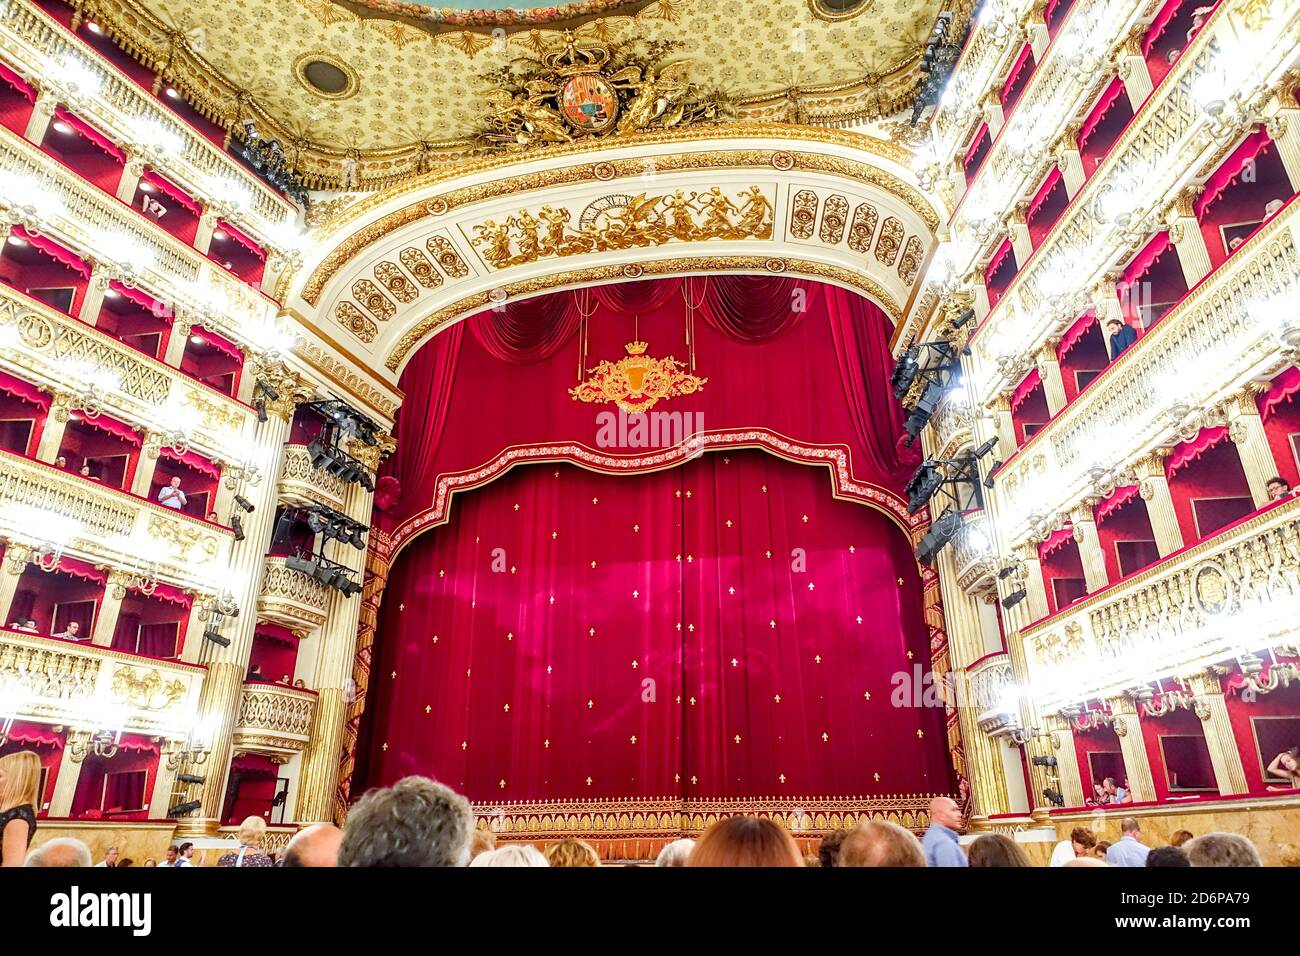 Le Teatro Reale di San Carlo (Théâtre Royal de Saint Charles), la monarchie Bourbon, naples italie, intérieur Banque D'Images